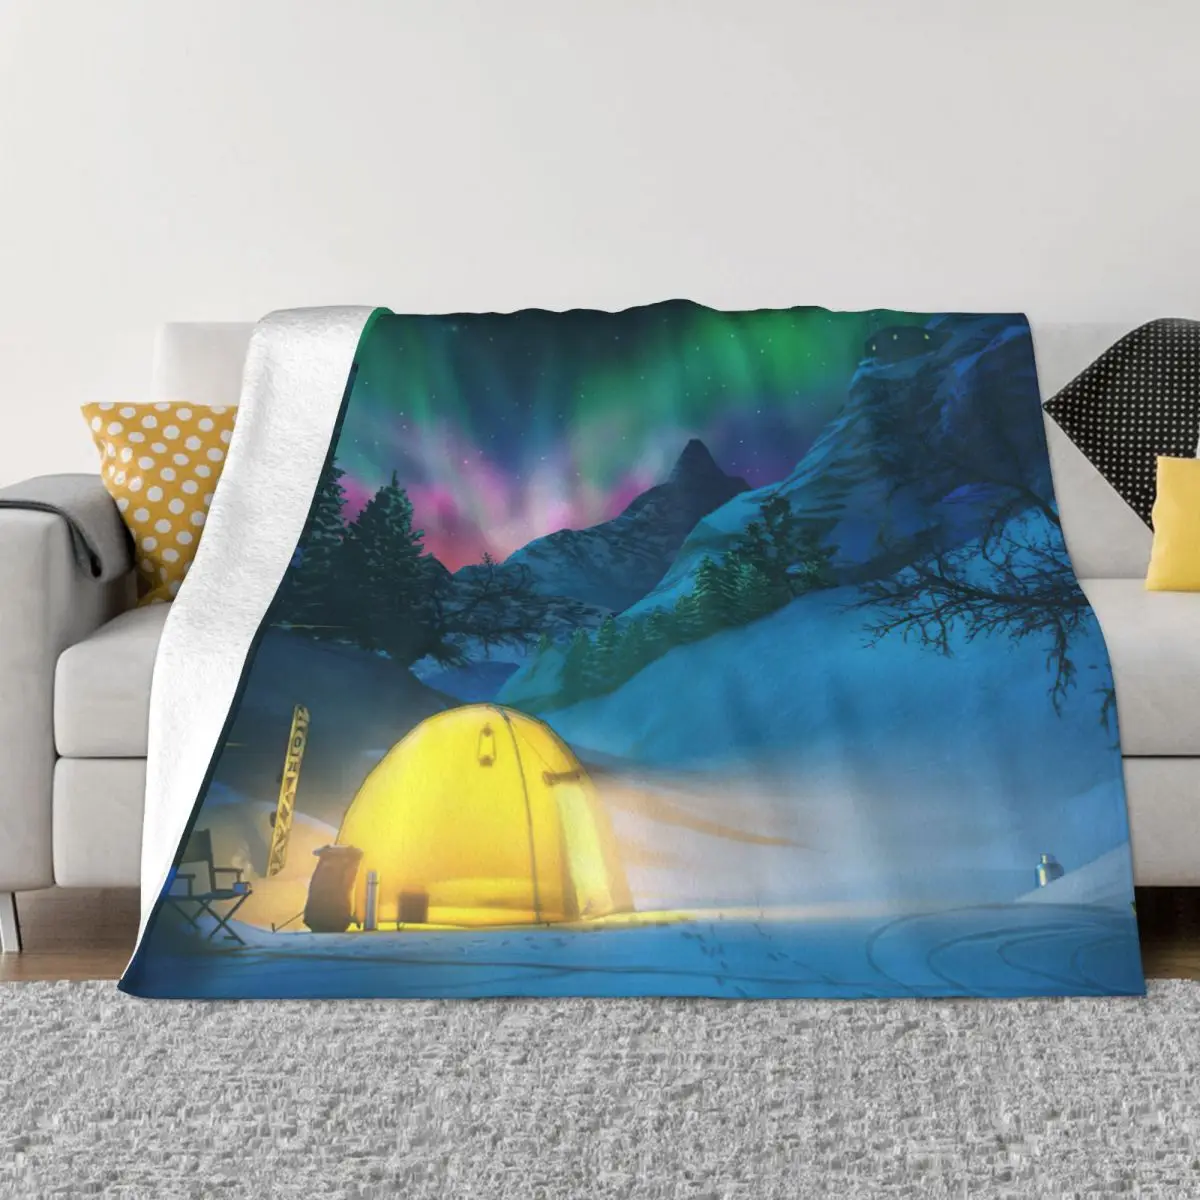 

Переносные теплые одеяла Aurora Borealis для зимнего кемпинга, постельное белье для путешествий